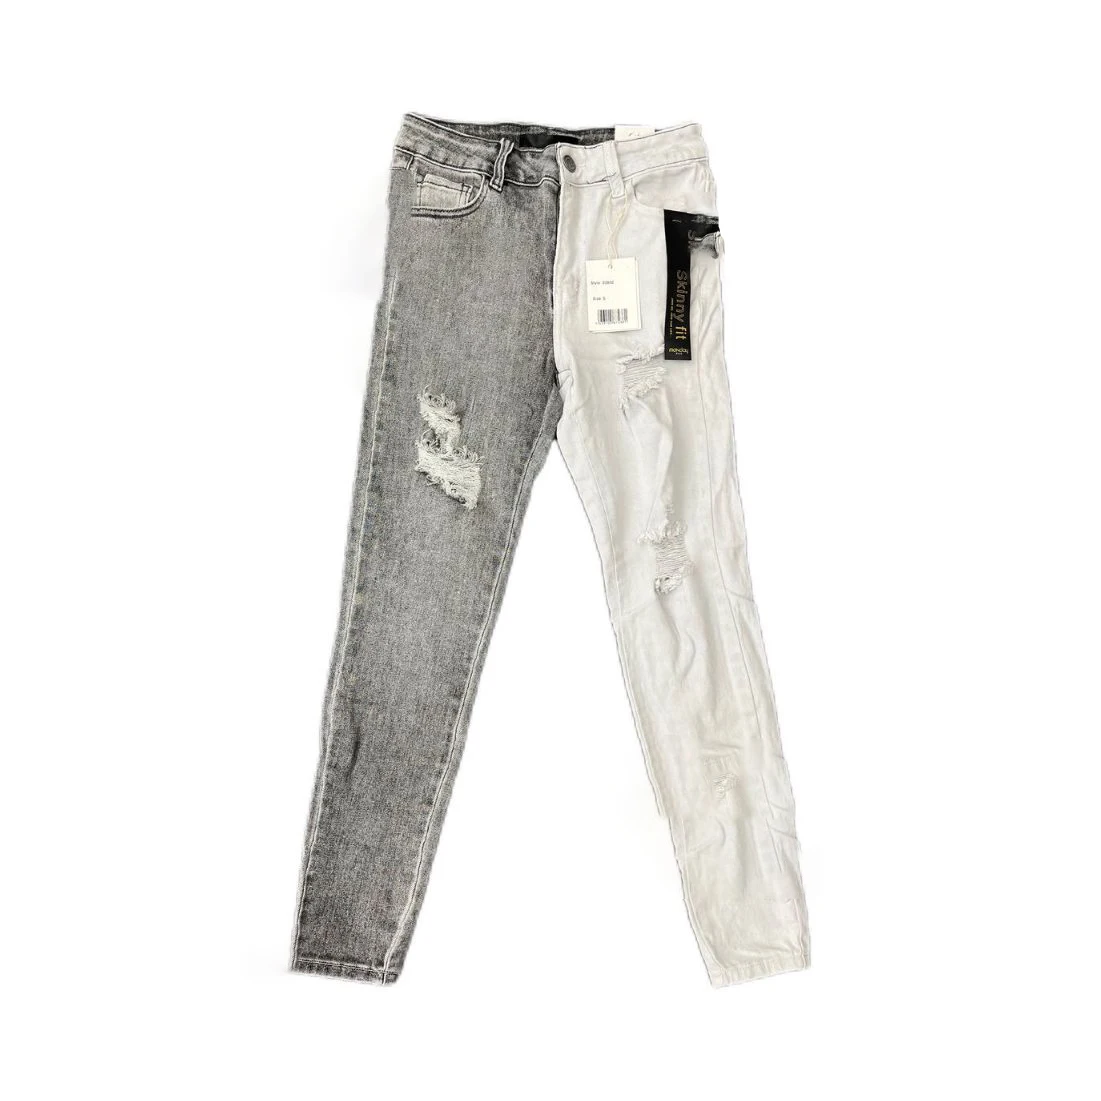 

Джинсы женские с прострочкой, рваные зауженные брюки стрейч, уличные трендовые серые и белые контрастные брюки с эффектом потертости